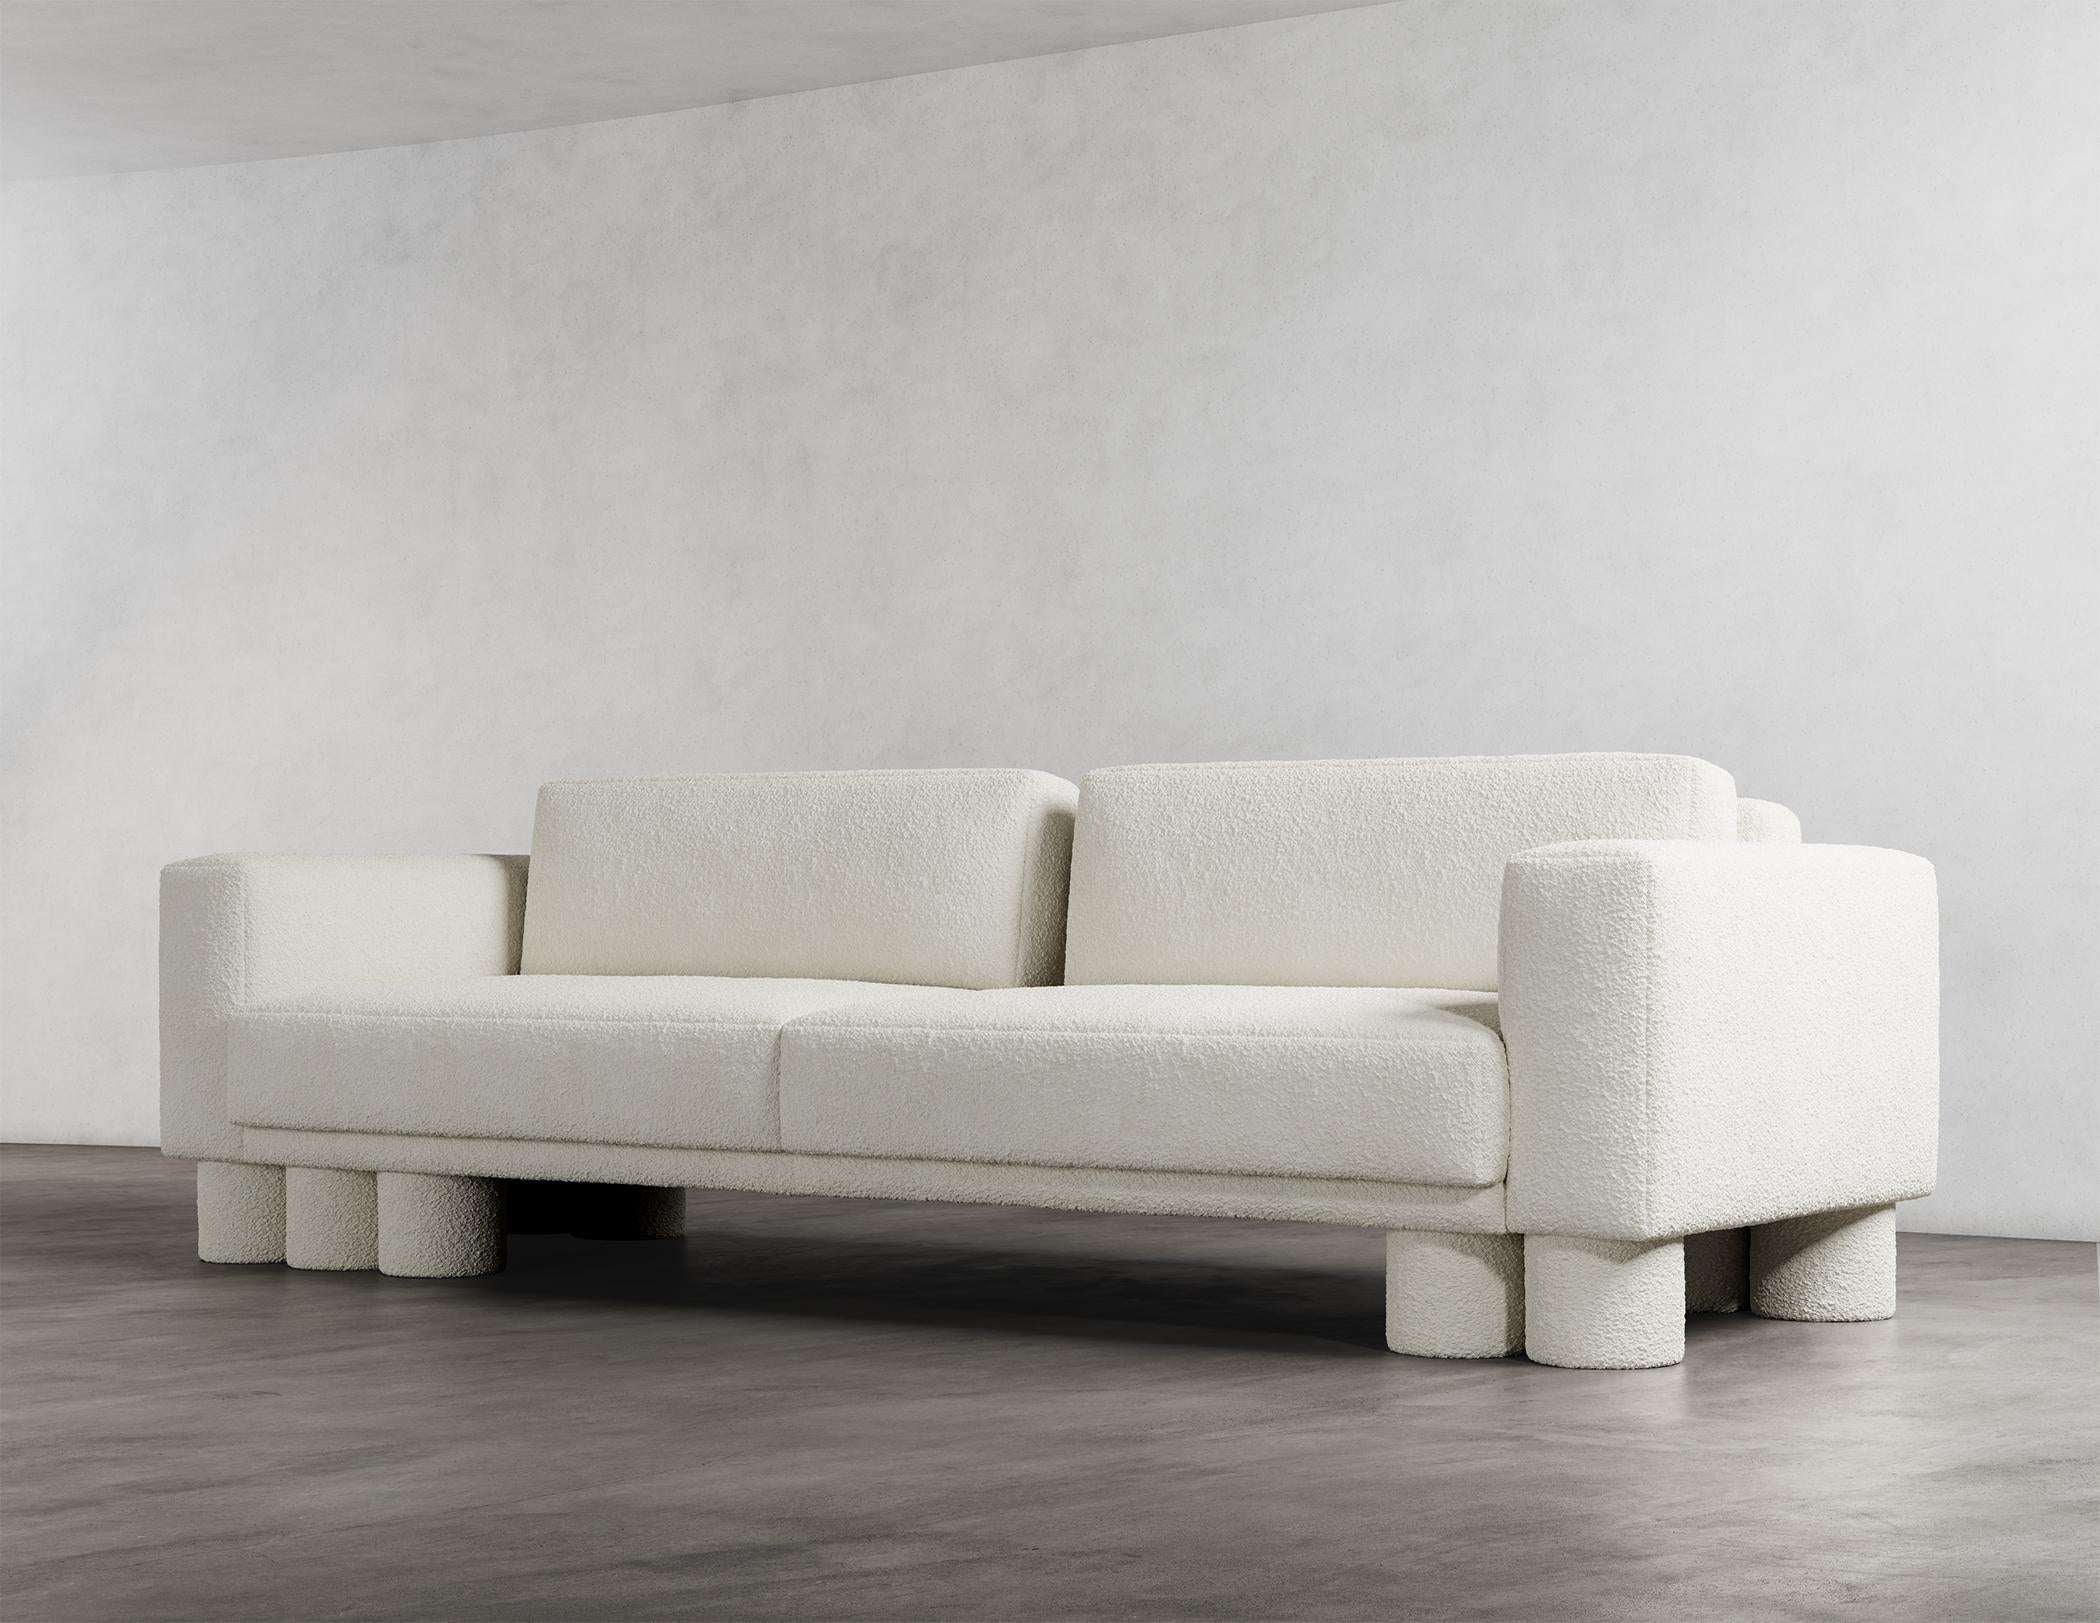 Le canapé sectionnel Pillar est un meuble étonnant au design unique et captivant. Il se caractérise par des éléments de conception superposés et asymétriques qui créent un sentiment de sophistication et de simplicité. Le déséquilibre délibéré de ces